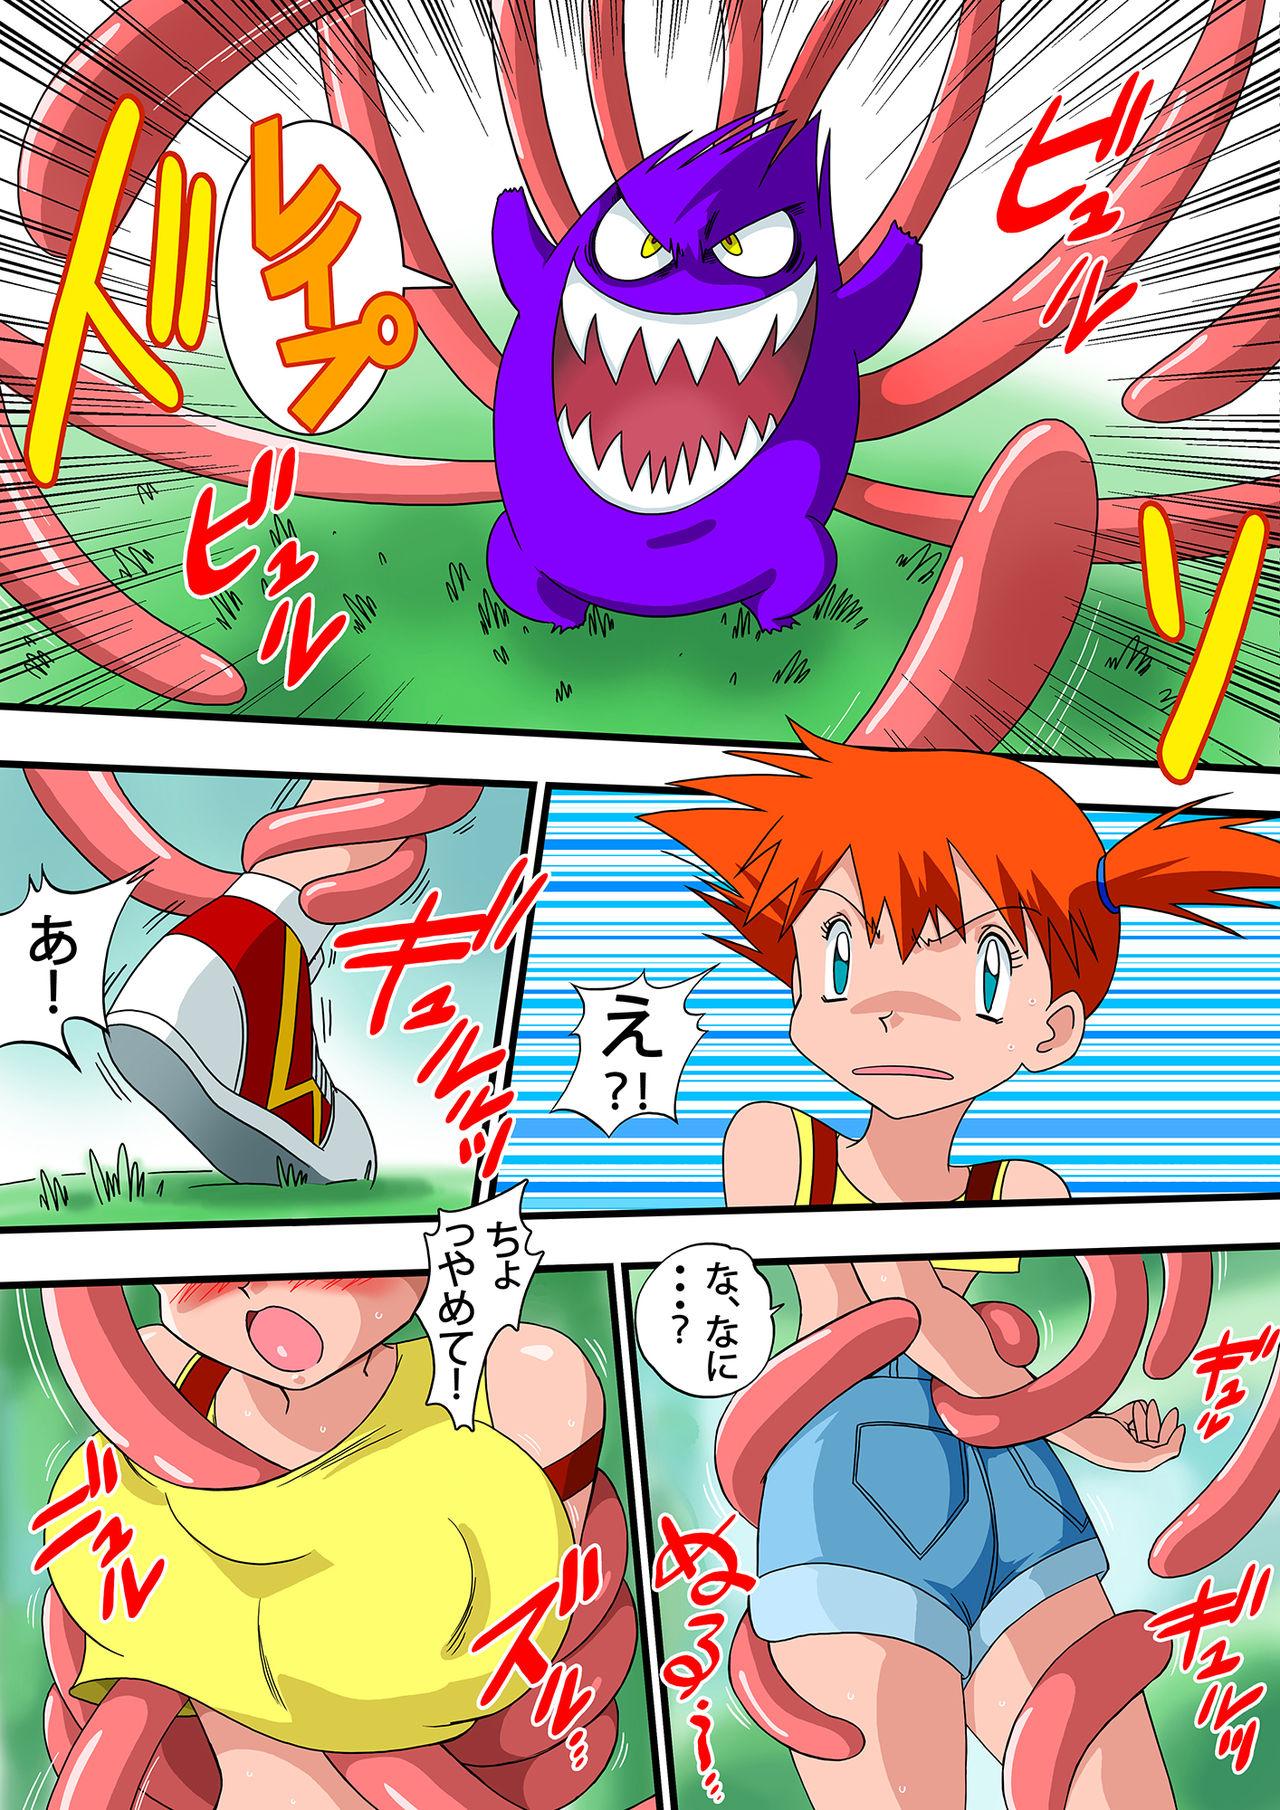 Mojada PokePoke - Pokemon Doggy Style - Page 4